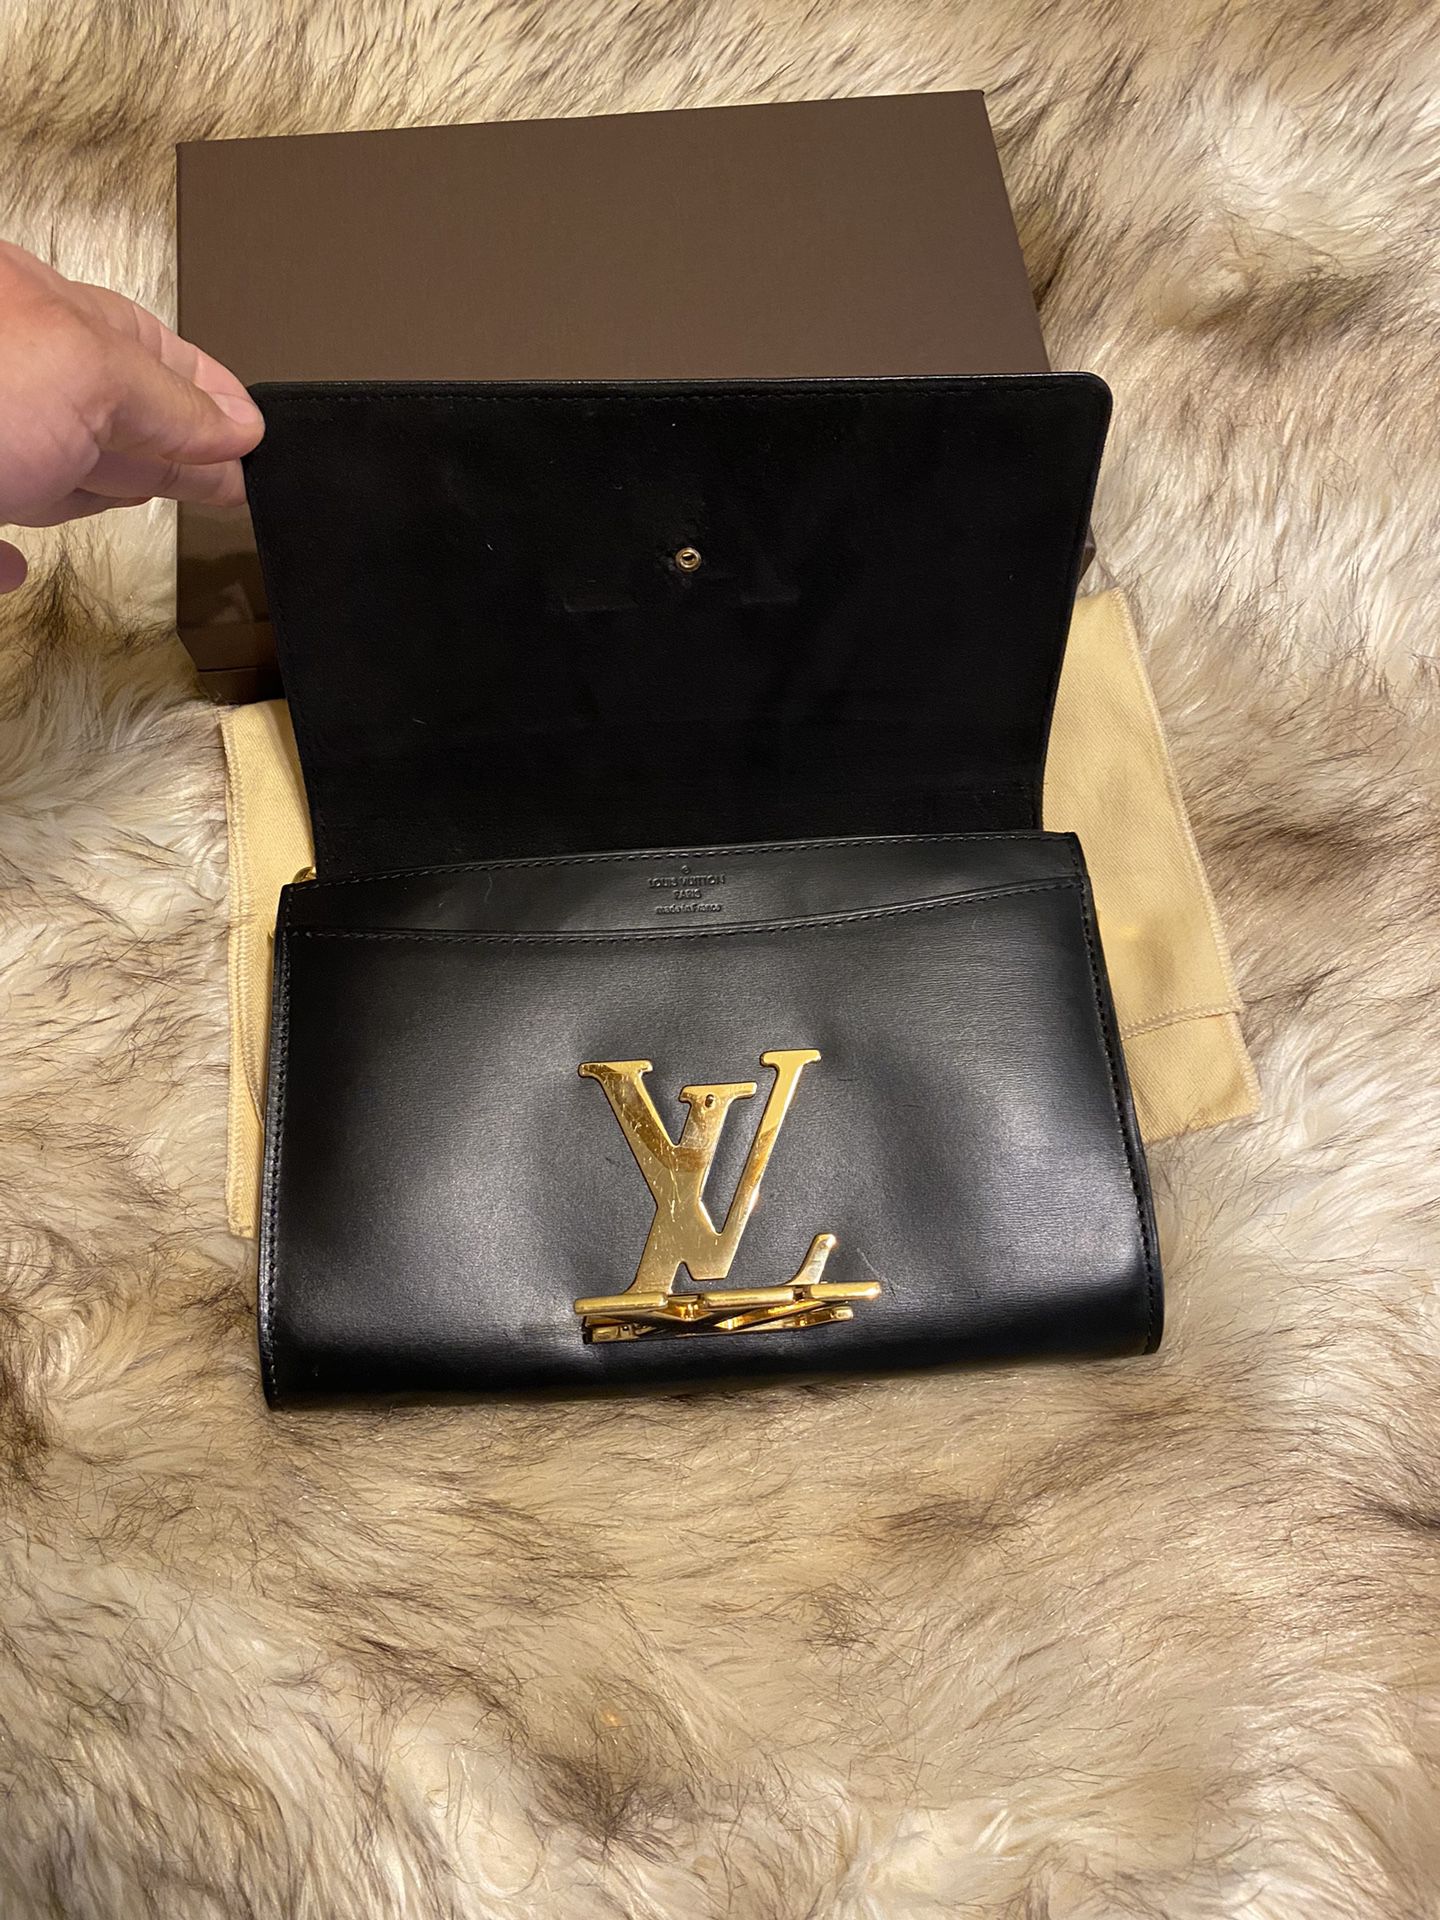 Authentic Louis Vuitton Black Pallas Noir Clutch Crossbody CA1156 + Dust Bag  for Sale in Chandler, AZ - OfferUp